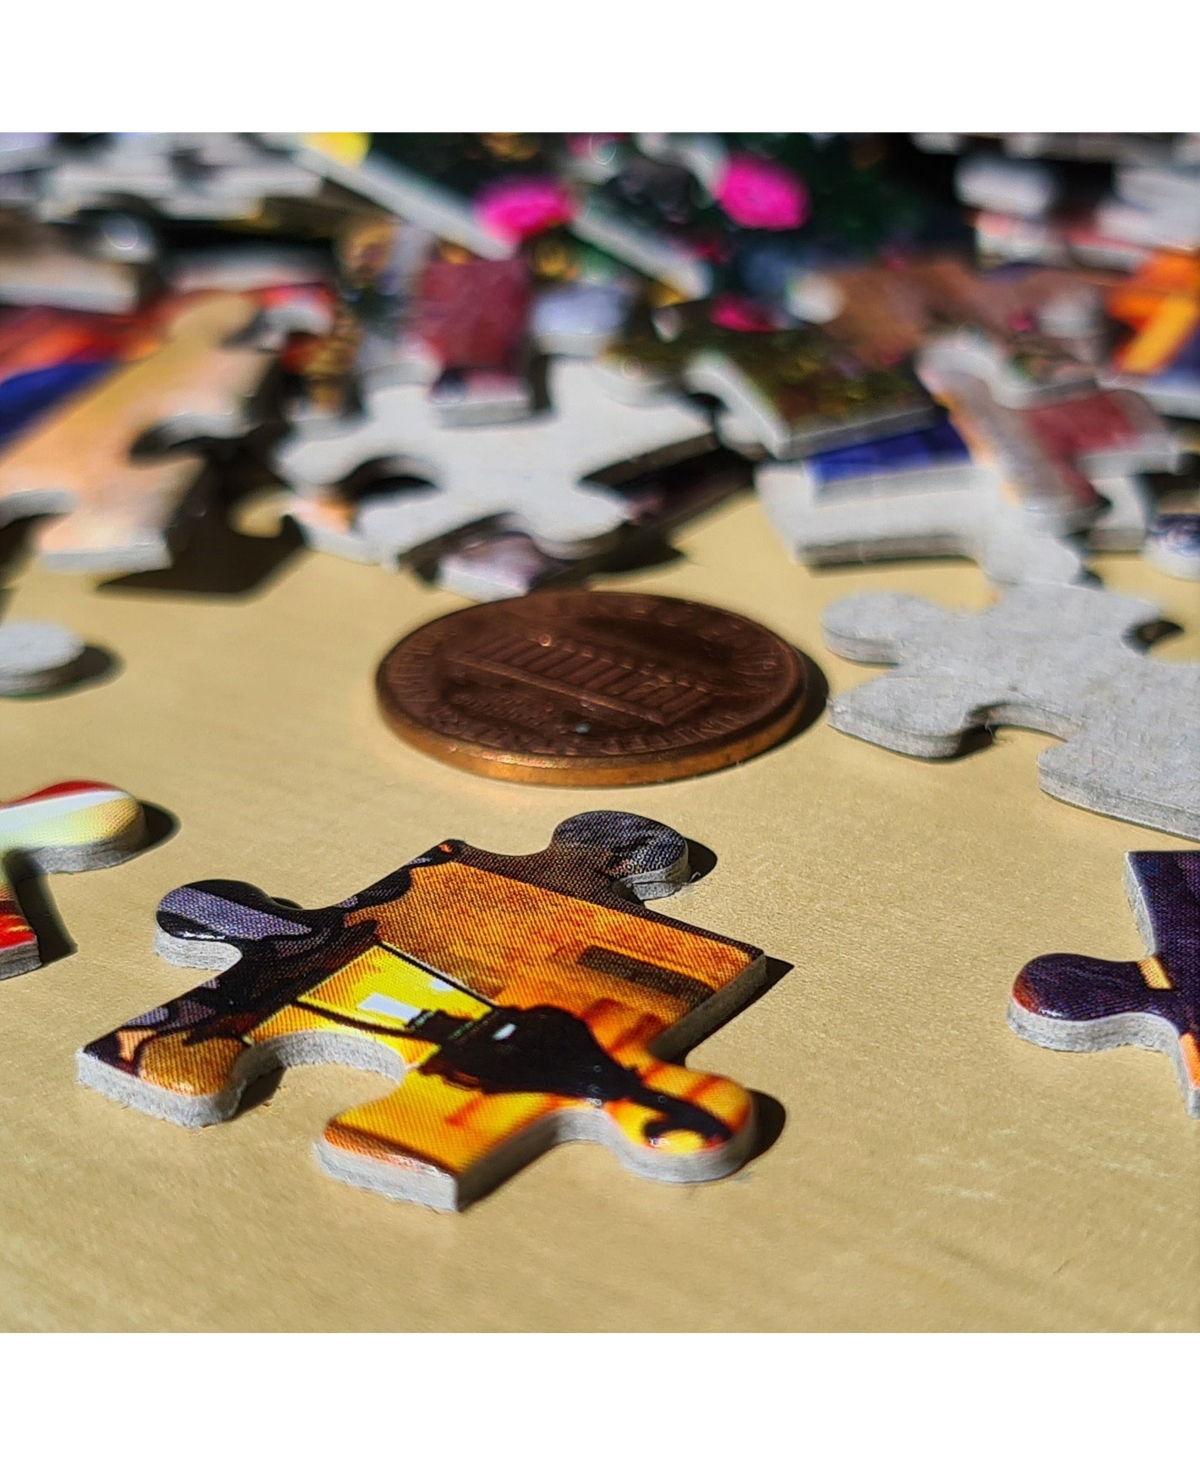 Shop Castorland Dubrovnik, Croatia 4000 Piece Jigsaw Puzzle In Multicolor